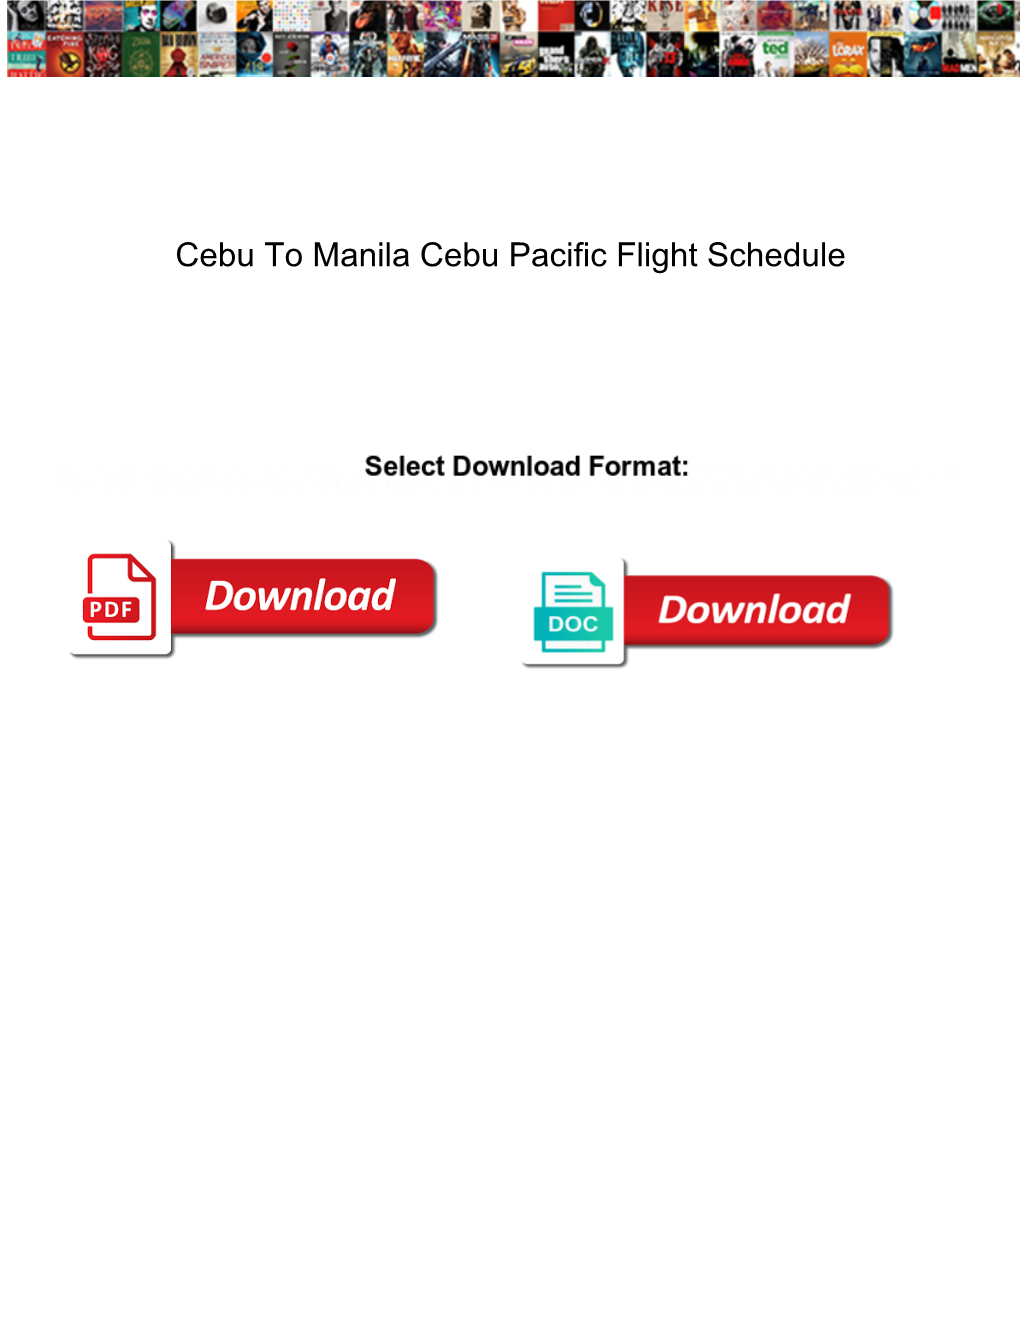 Cebu to Manila Cebu Pacific Flight Schedule